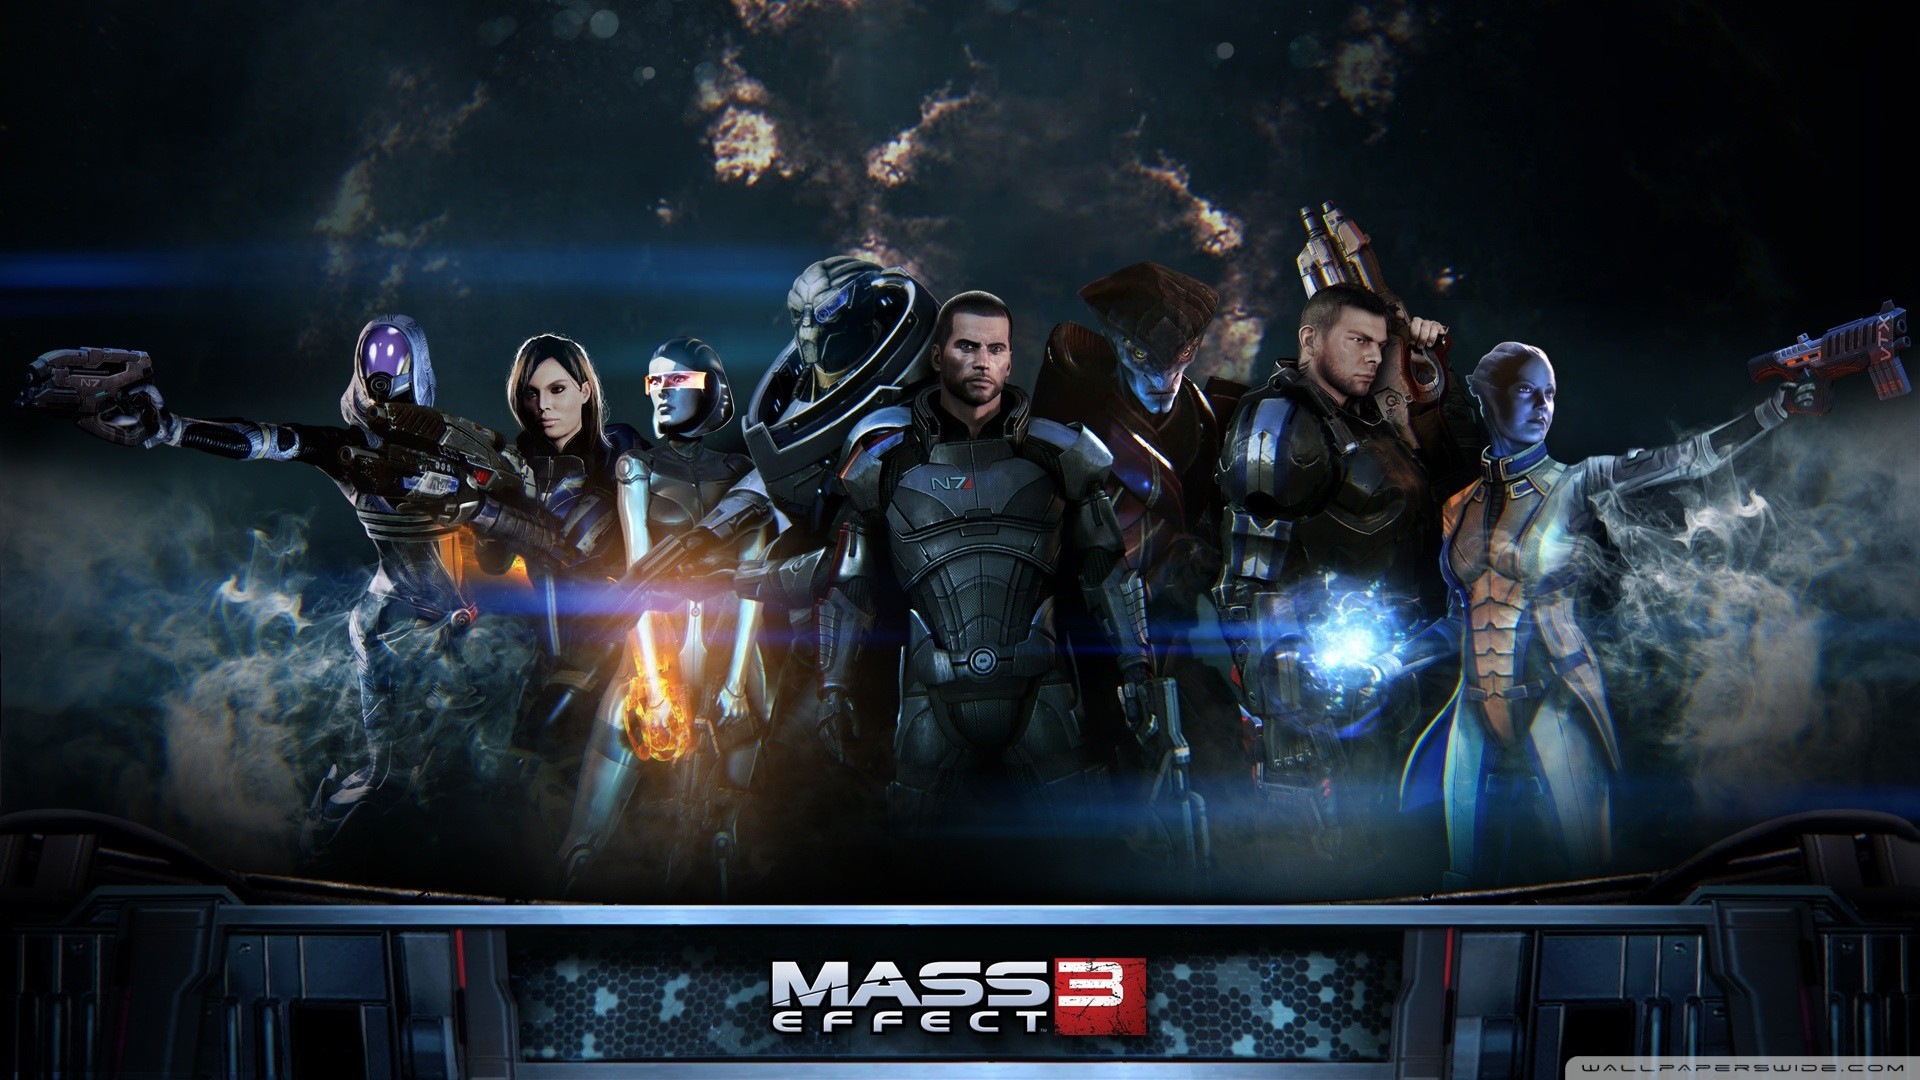 Mass Effect, Video Games, Mass Effect 3 Wallpapers HD / Desktop and